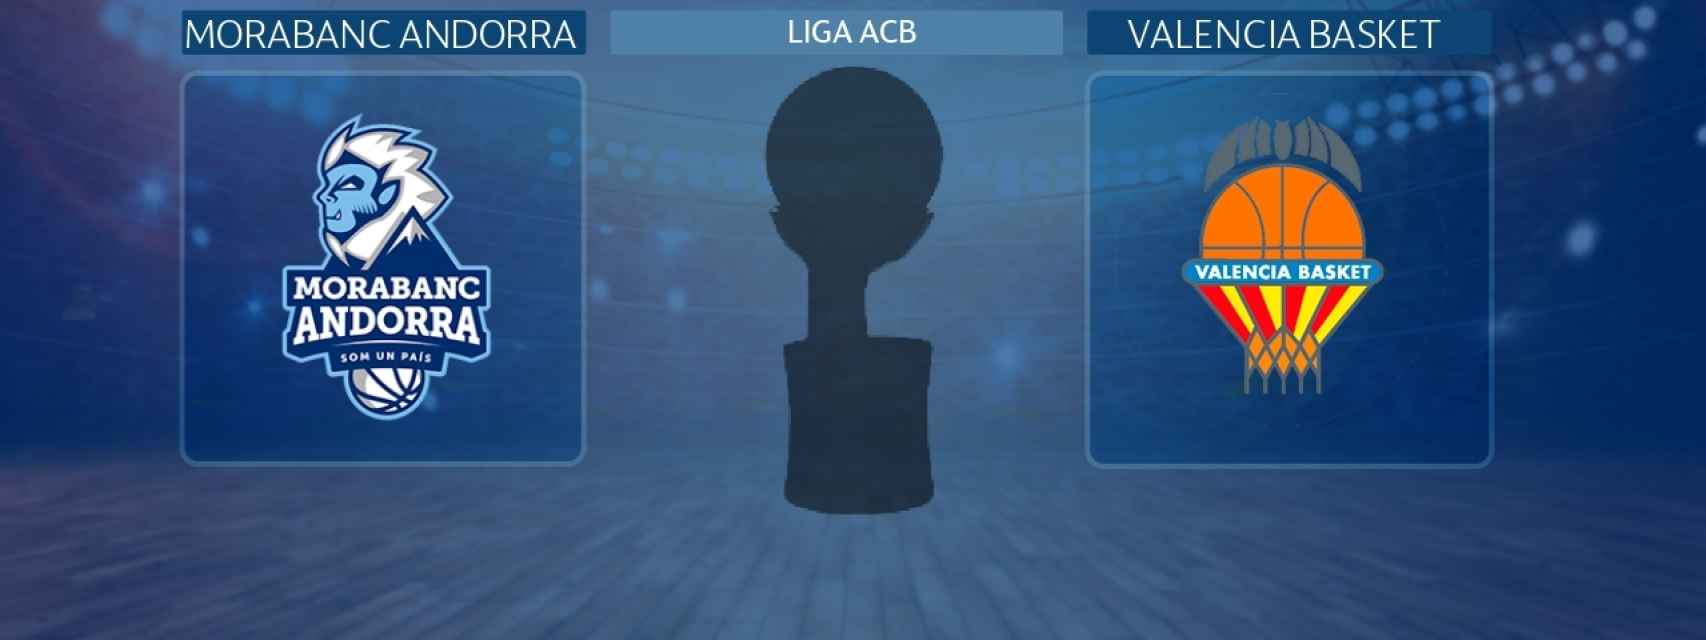 MoraBanc Andorra - Valencia Basket, partido de la Liga ACB